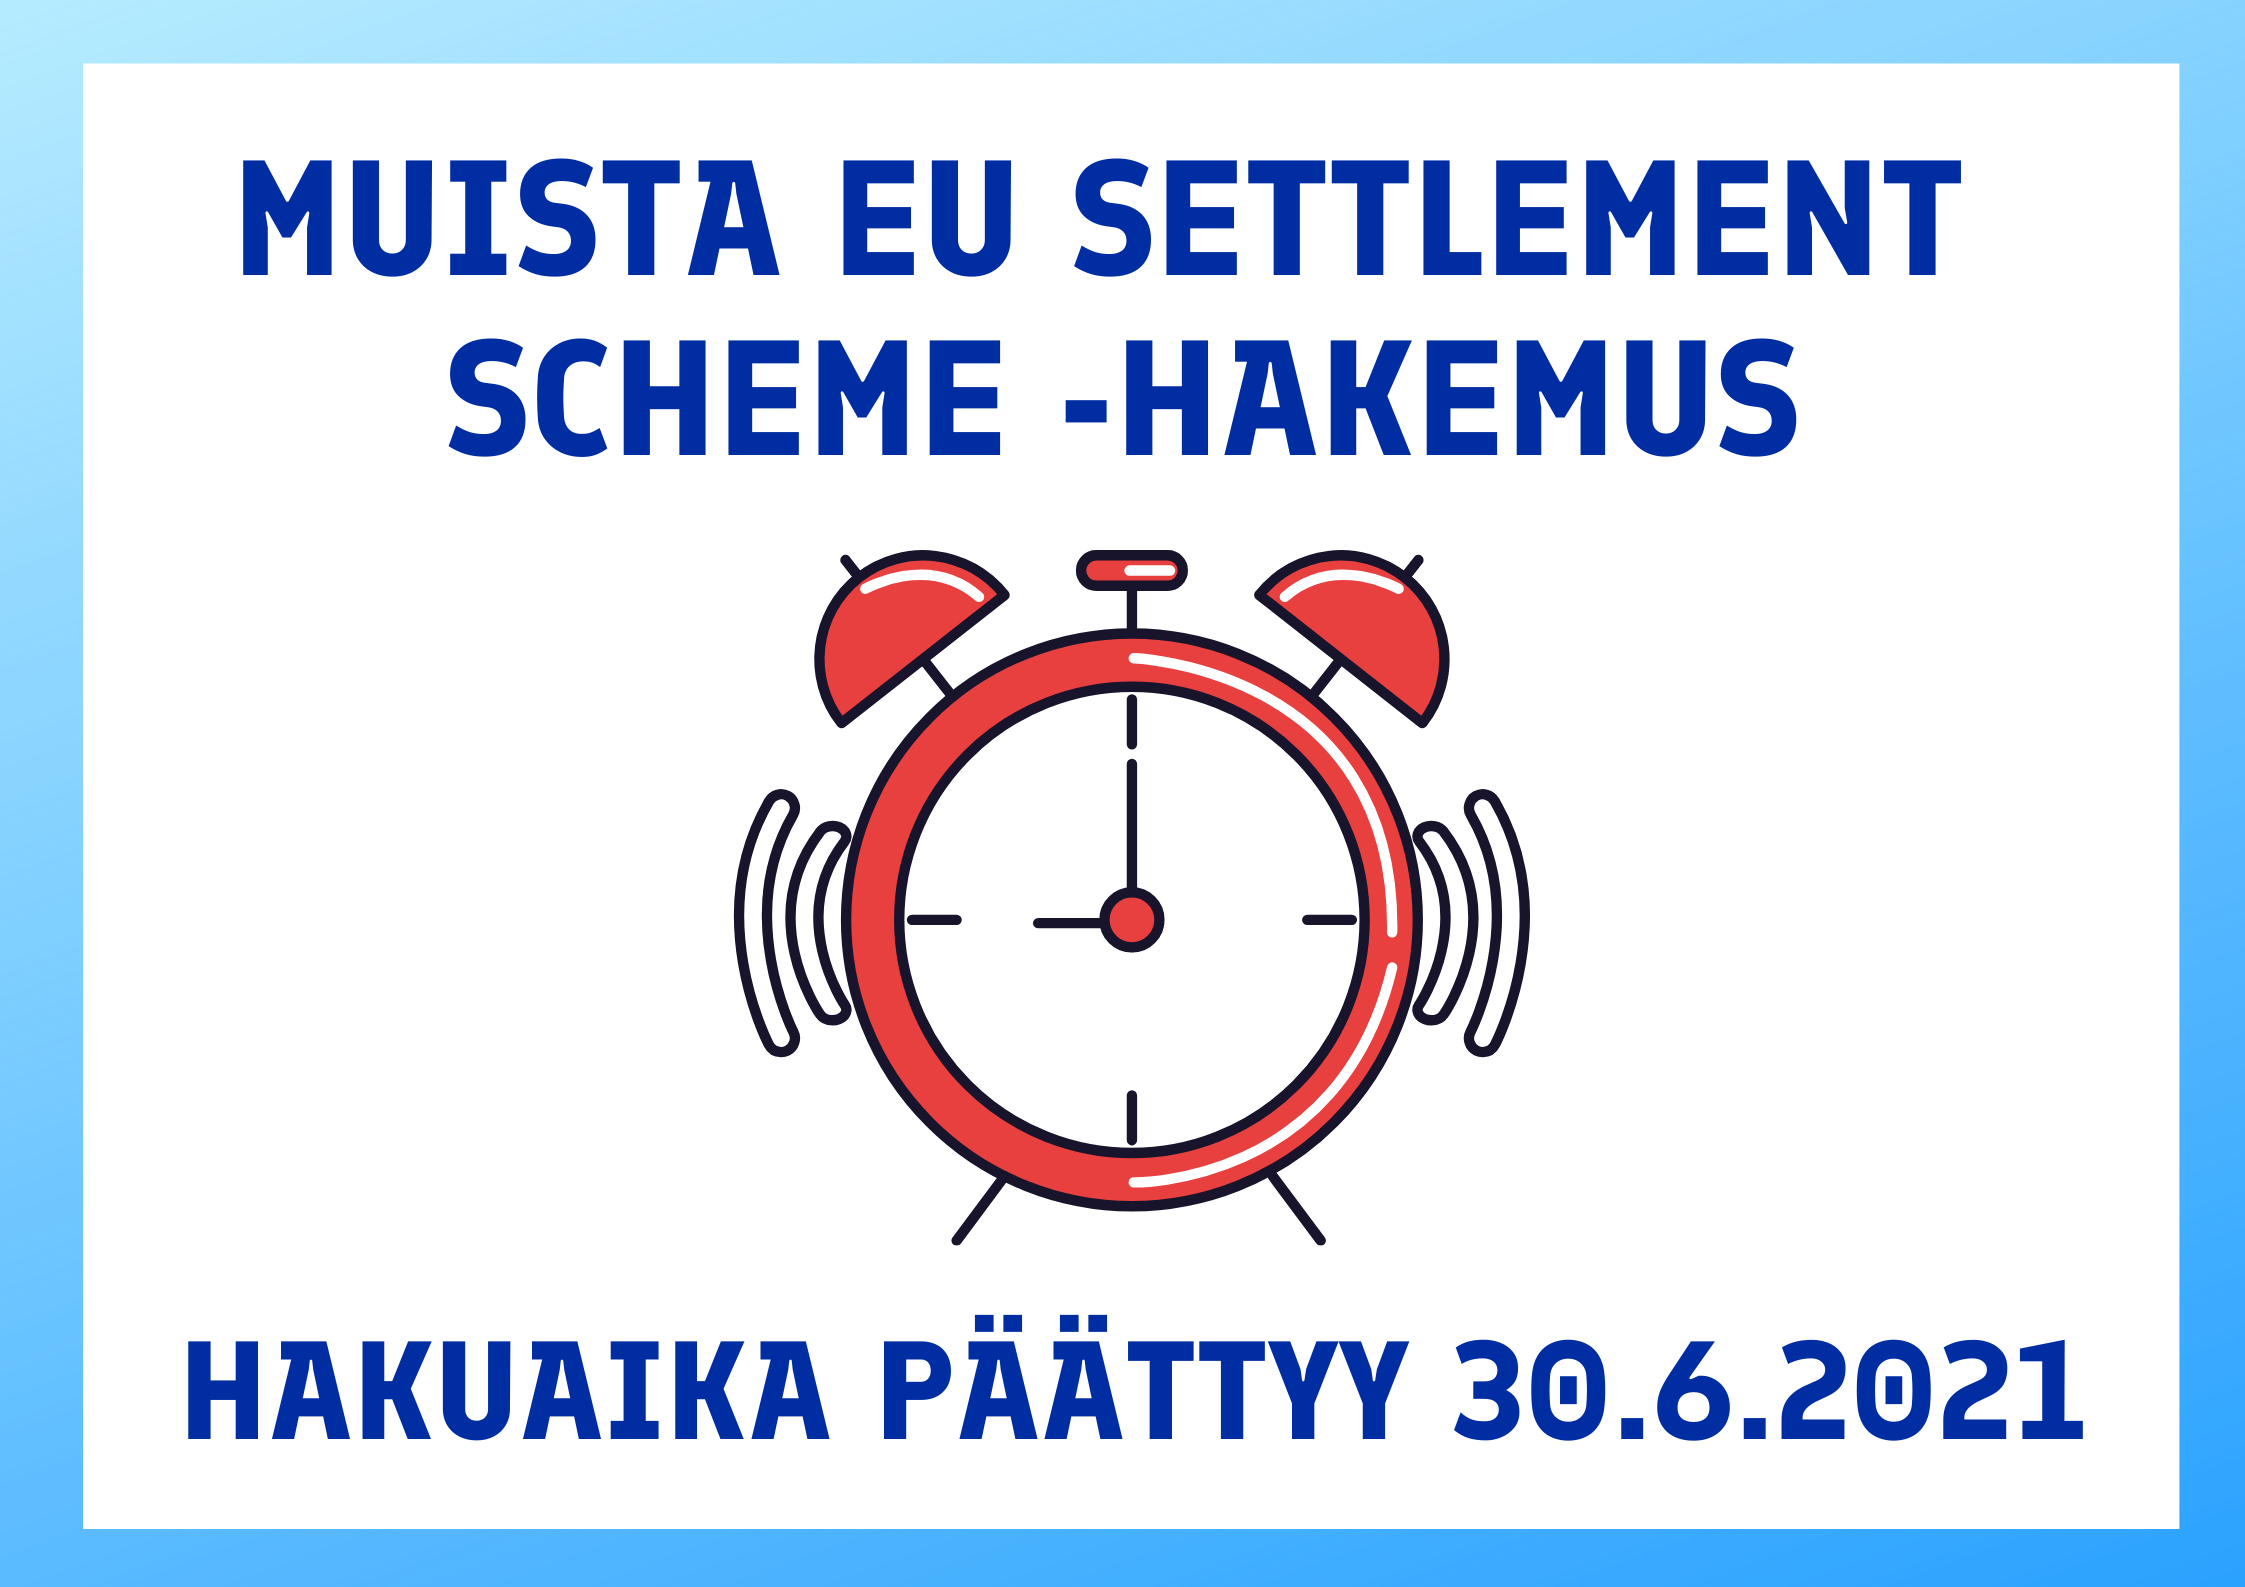 Kuva, jossa muistutetaan EU Settlement Scheme -hakemuksesta. Hakuaika päättyy 30.6.2021.